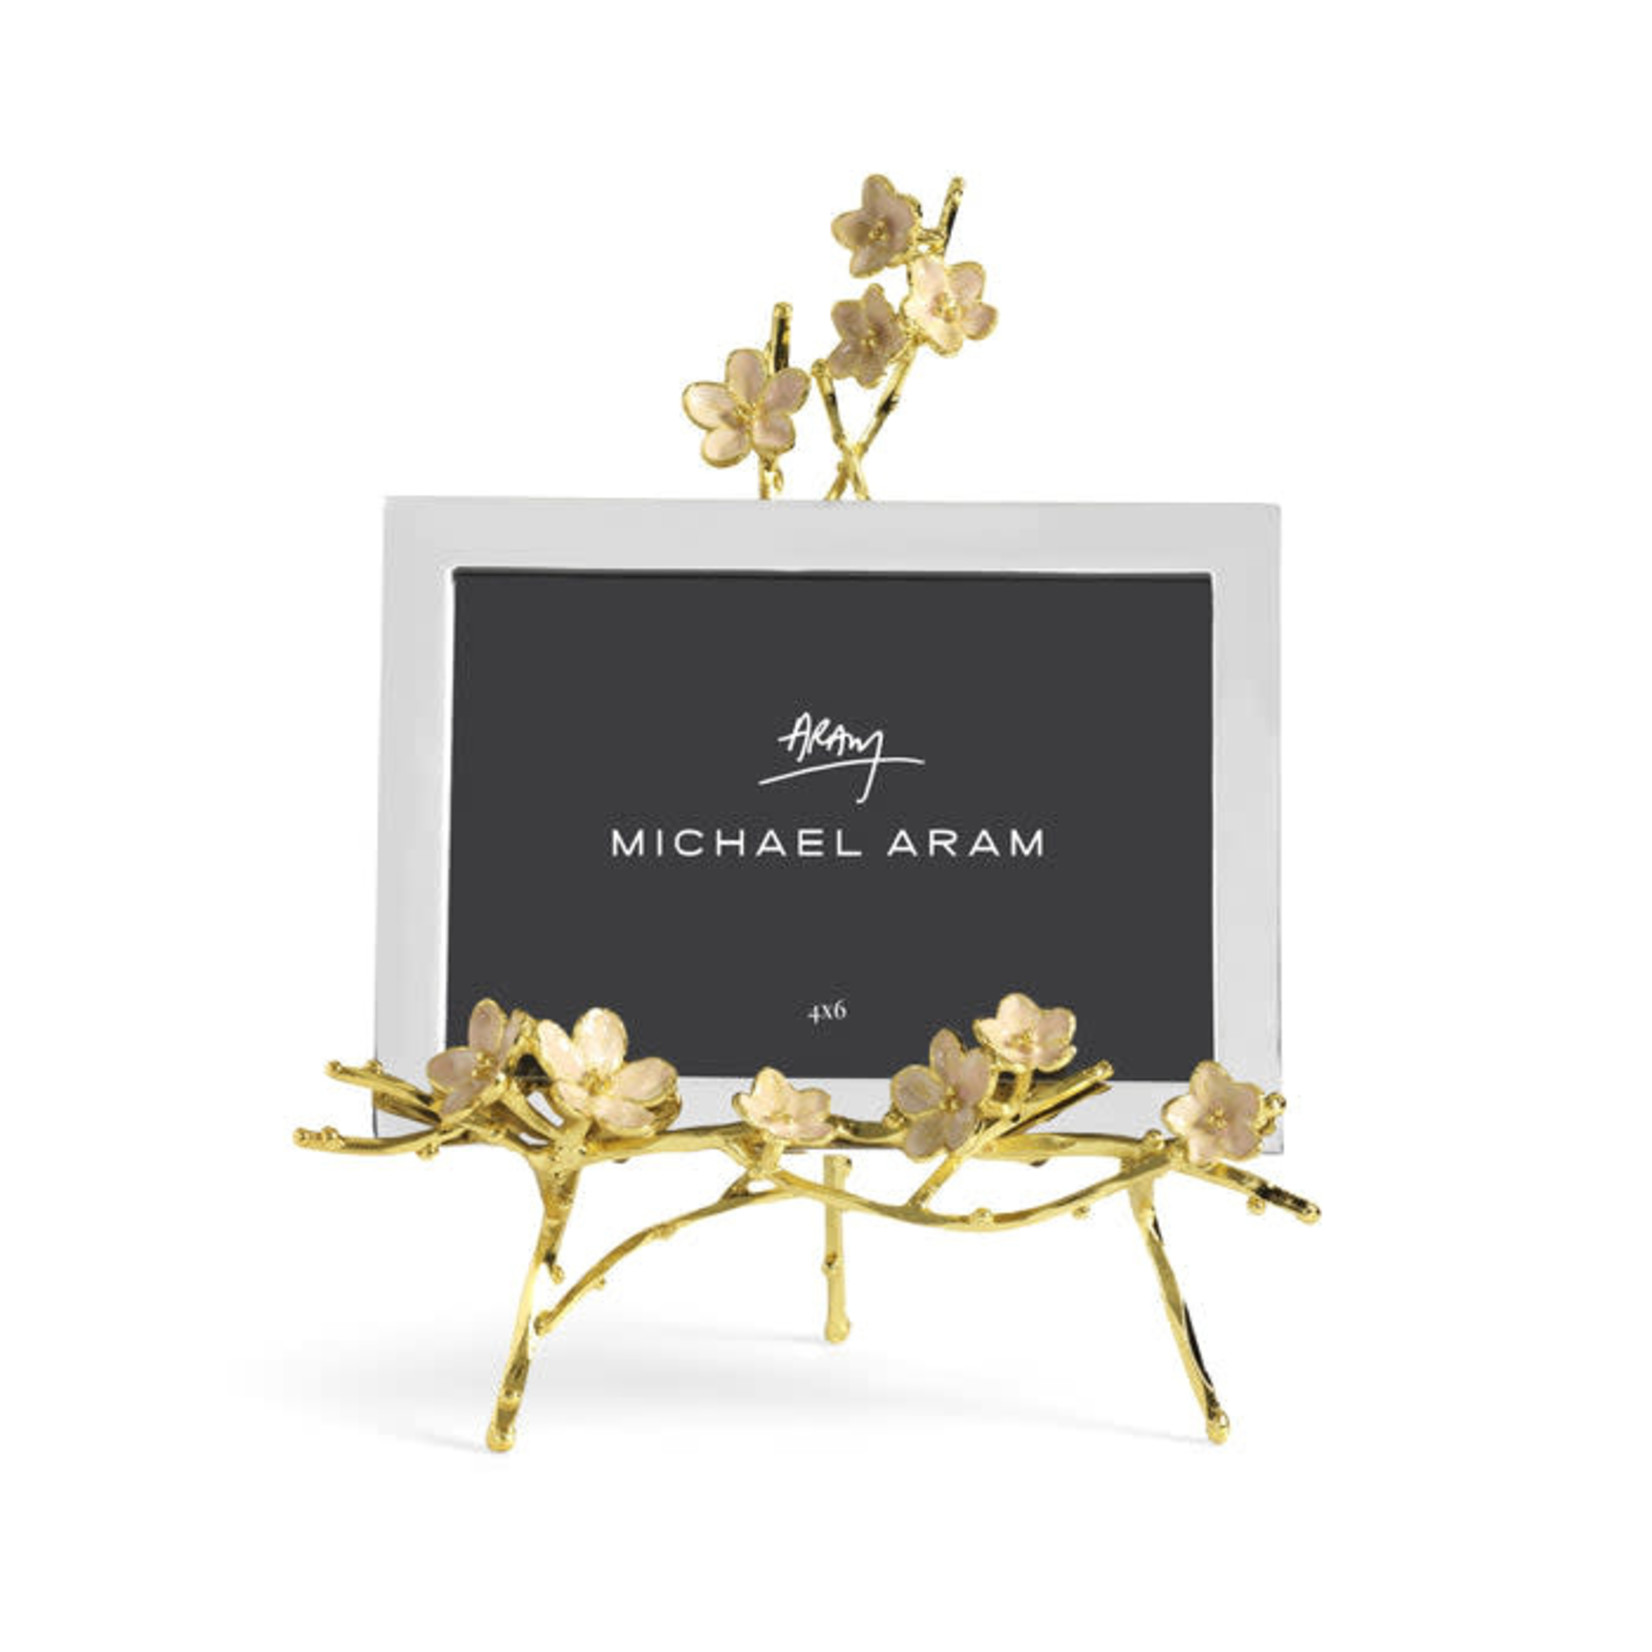 Michael Aram Cherry Blossom 4x6 Easel Frame